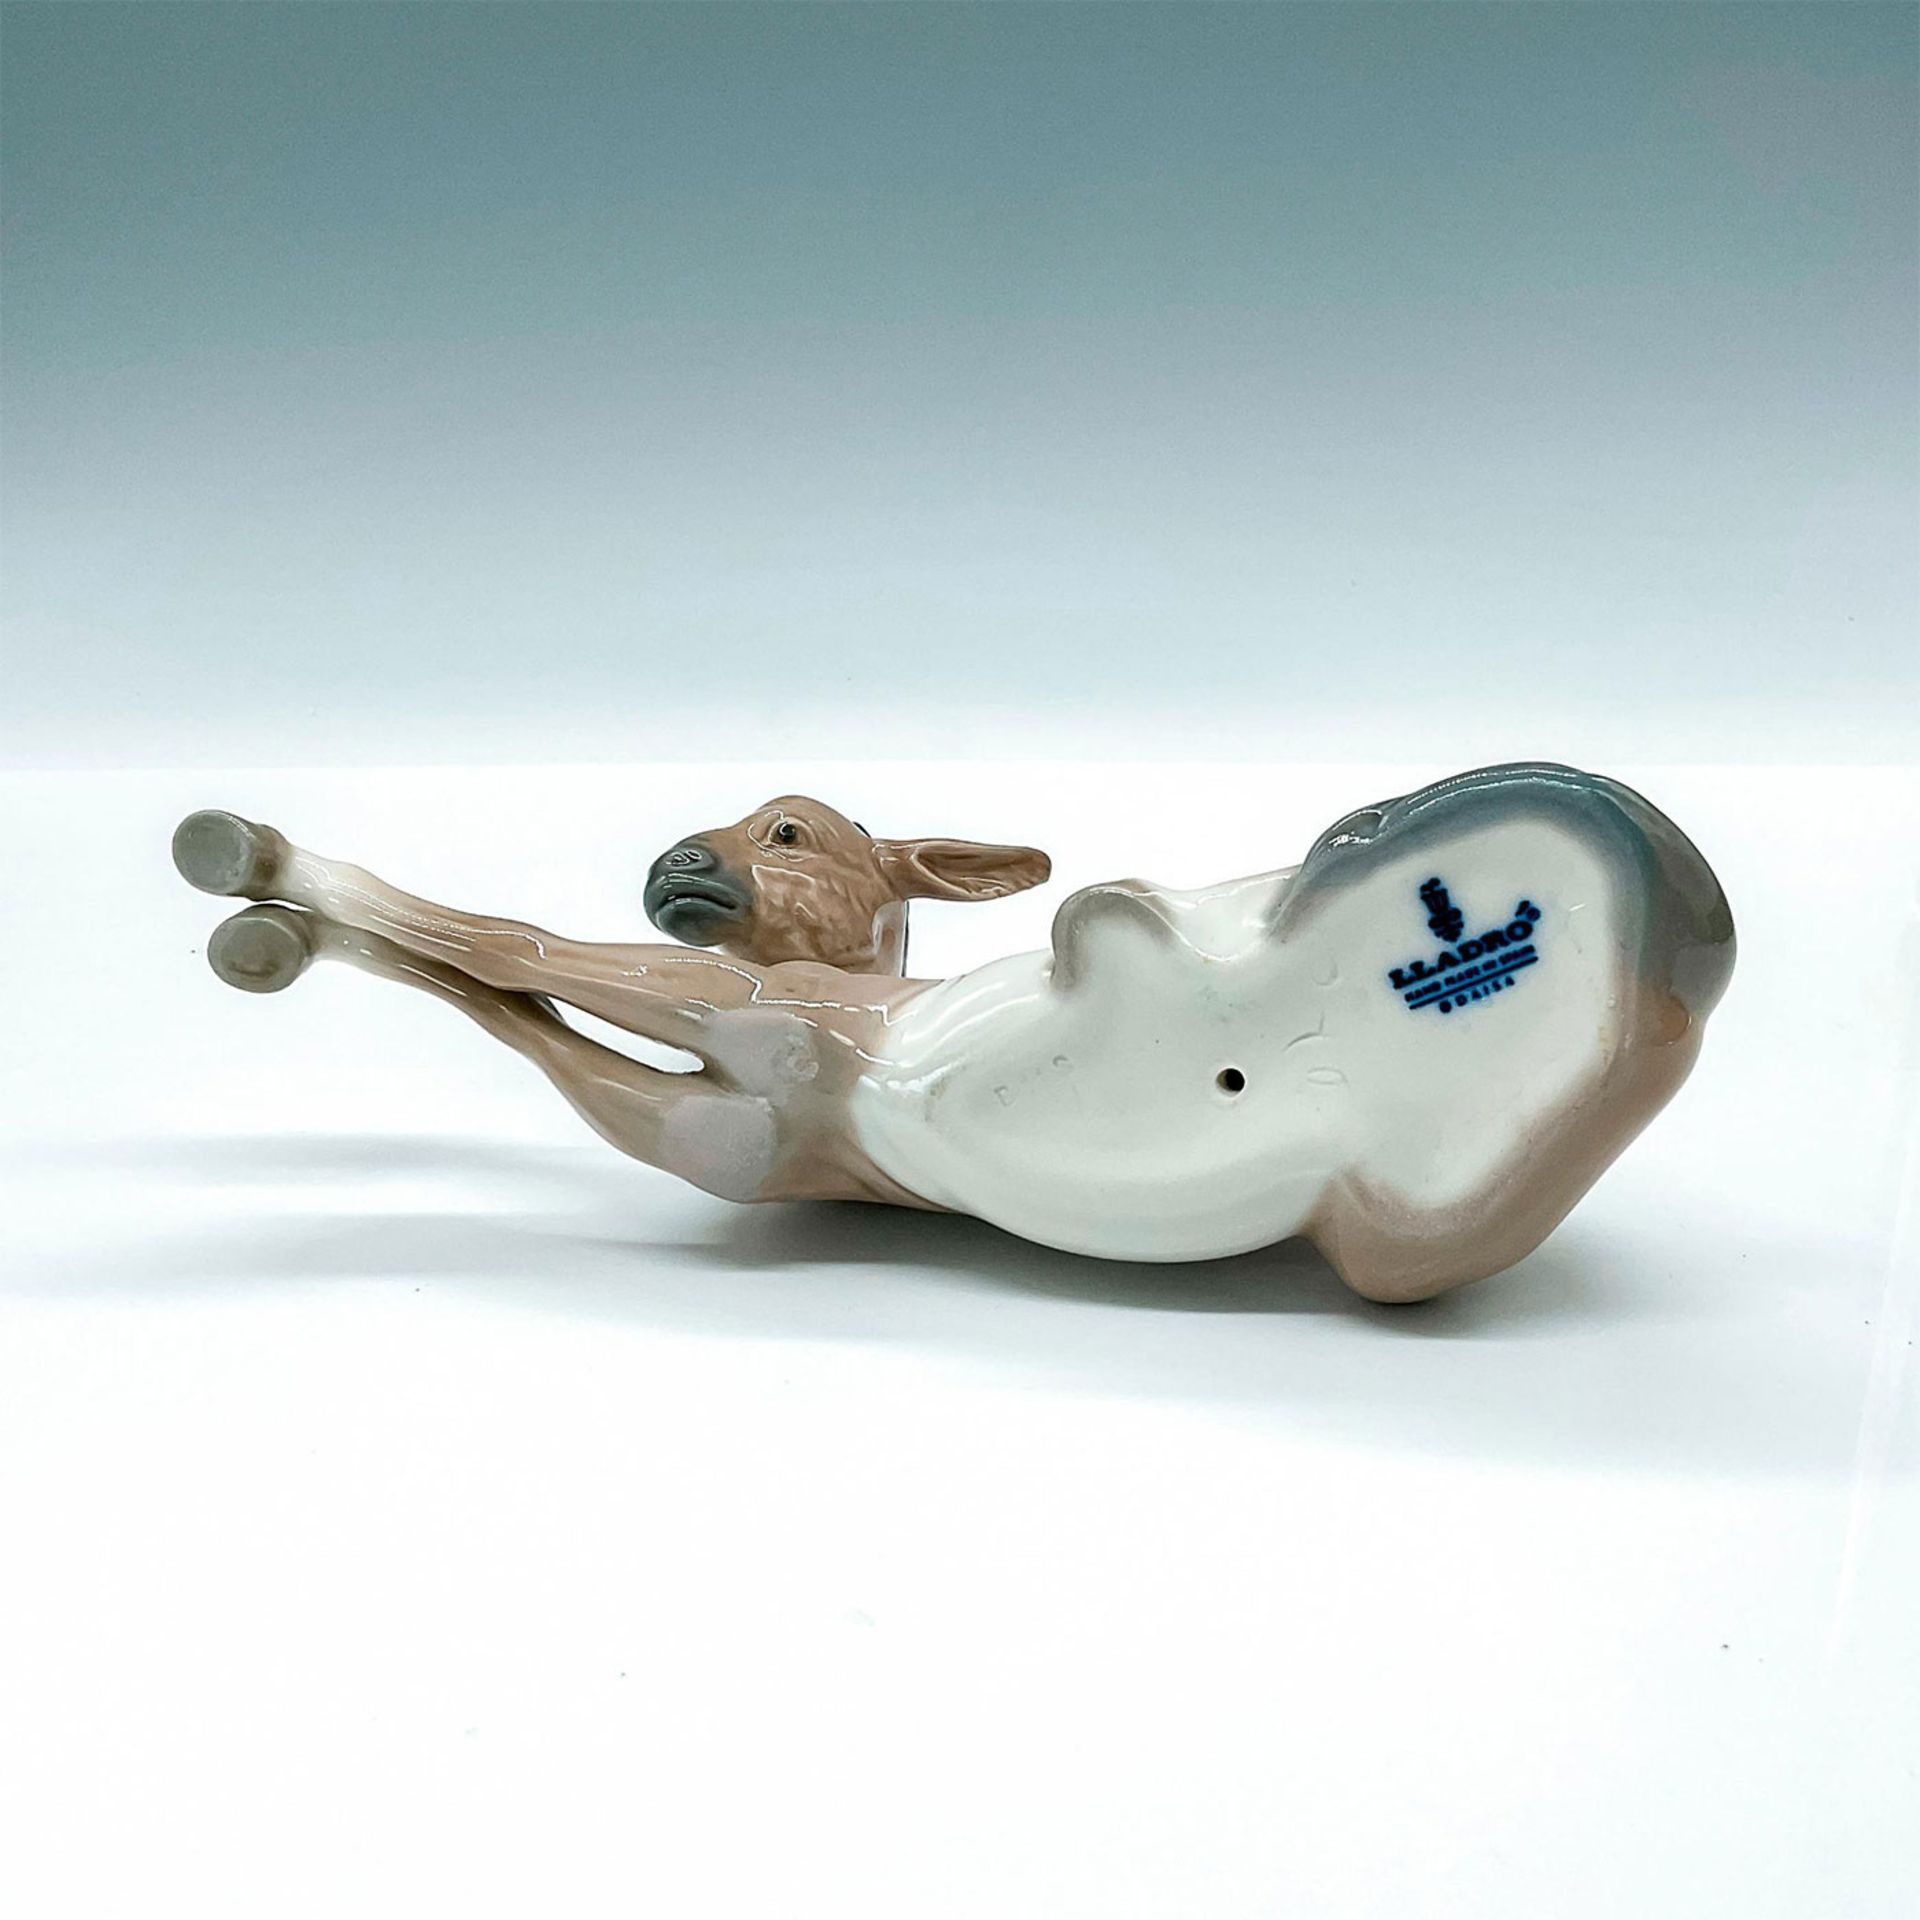 Donkey 1004679 - Lladro Porcelain Figurine - Image 3 of 3